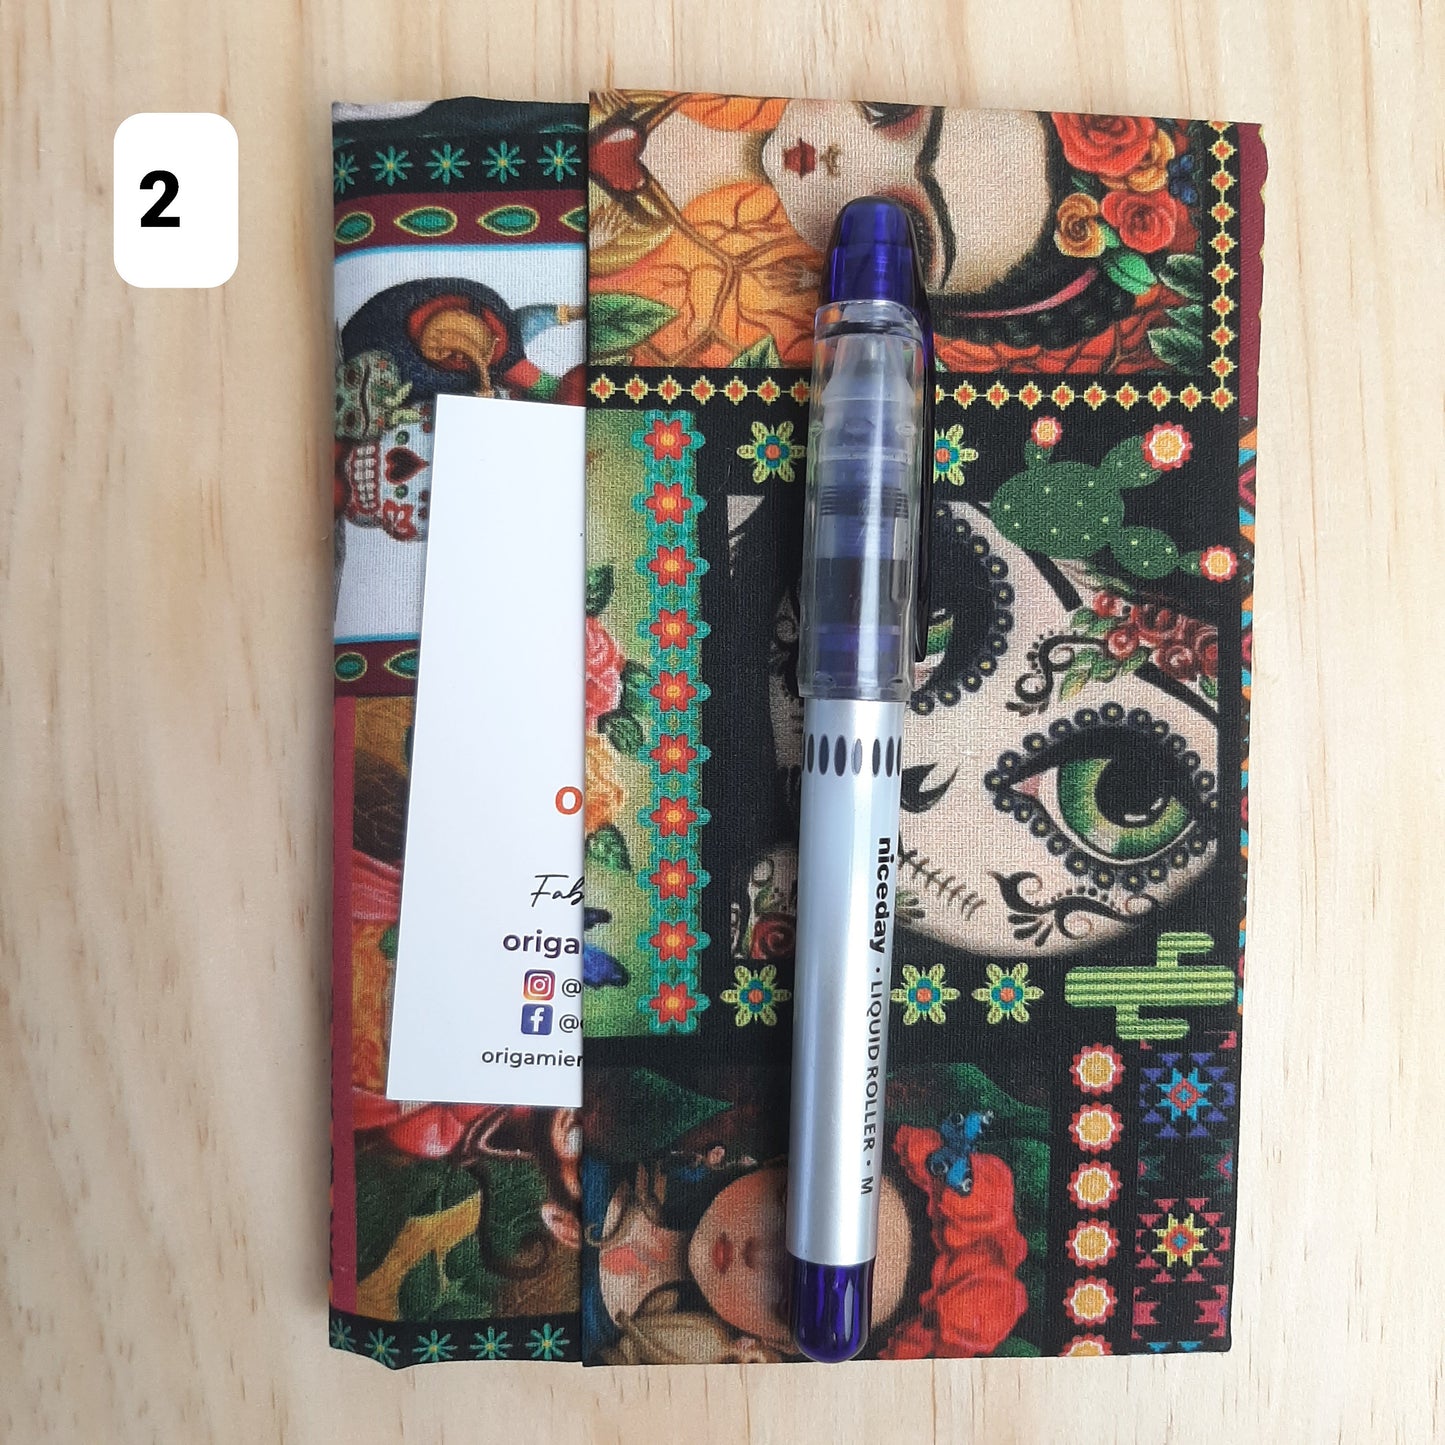 Avec ce protège-carnet "Frida Kahlo" donnez un look élégant à vos notes quotidiennes, de voyage, carnet de gratitude